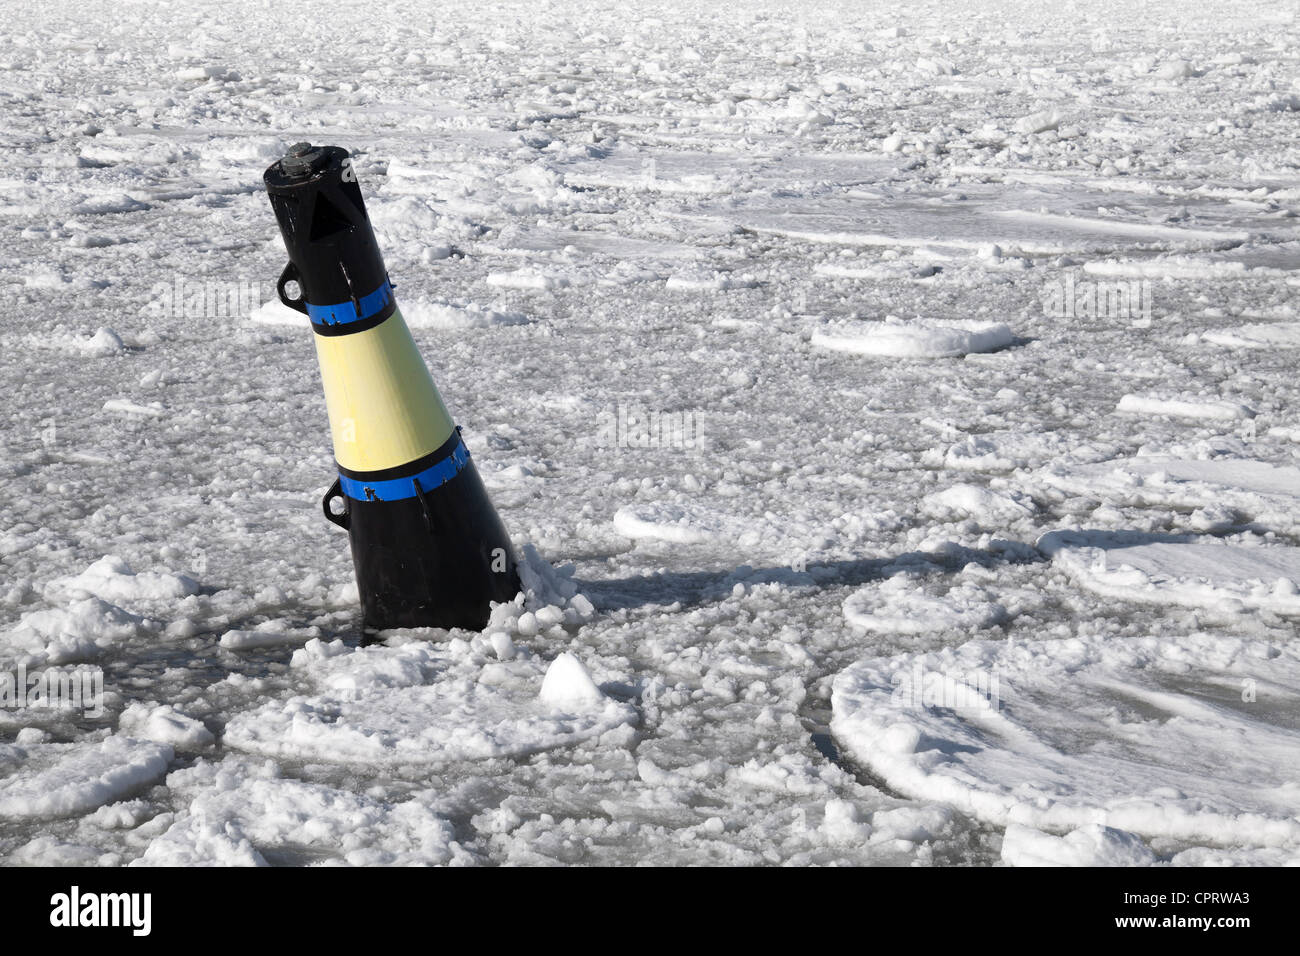 Bouée conique jaune et noir sur la mer Baltique gelée Banque D'Images